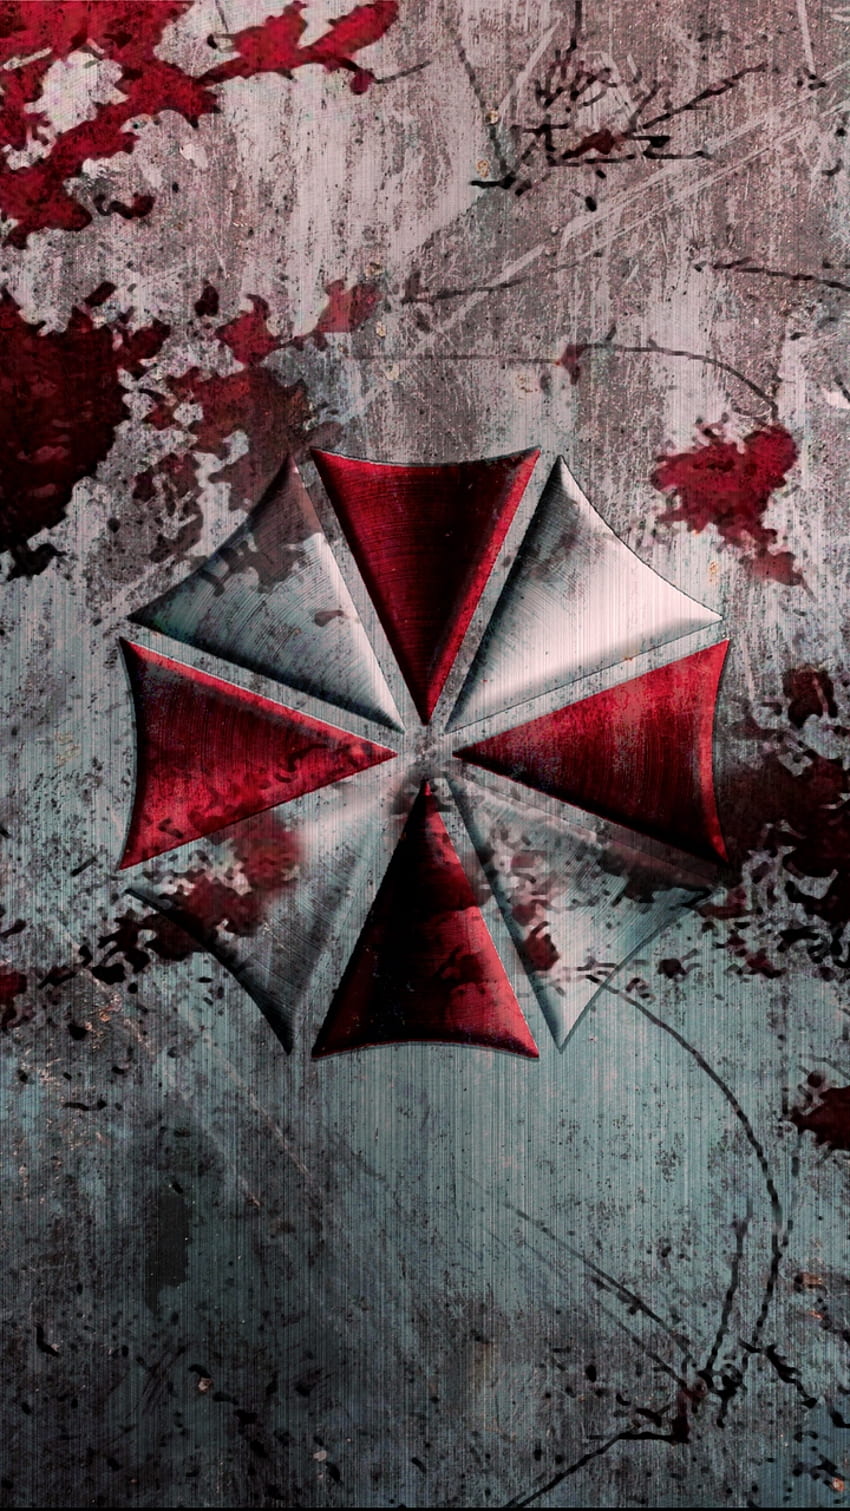 Resident Evil, Umbrella, Corporación - Android Resident Evil fondo de pantalla del teléfono